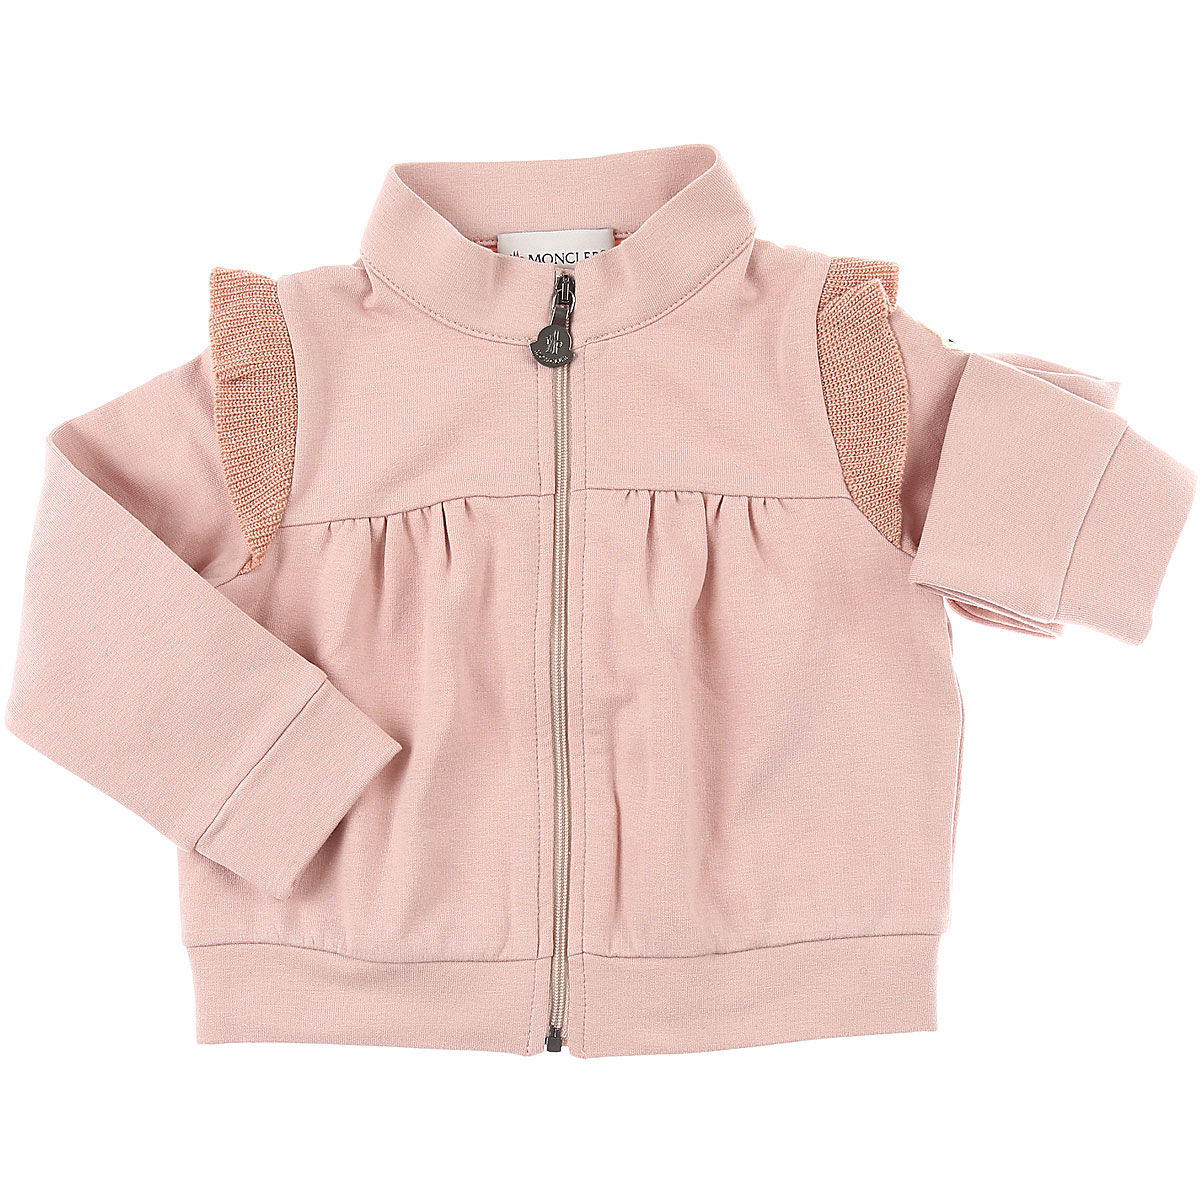 Moncler Baby Sweatshirt & Kapuzenpullover für Mädchen Günstig im Outlet Sale, Pink, Baumwolle, 2017, 12M 9M